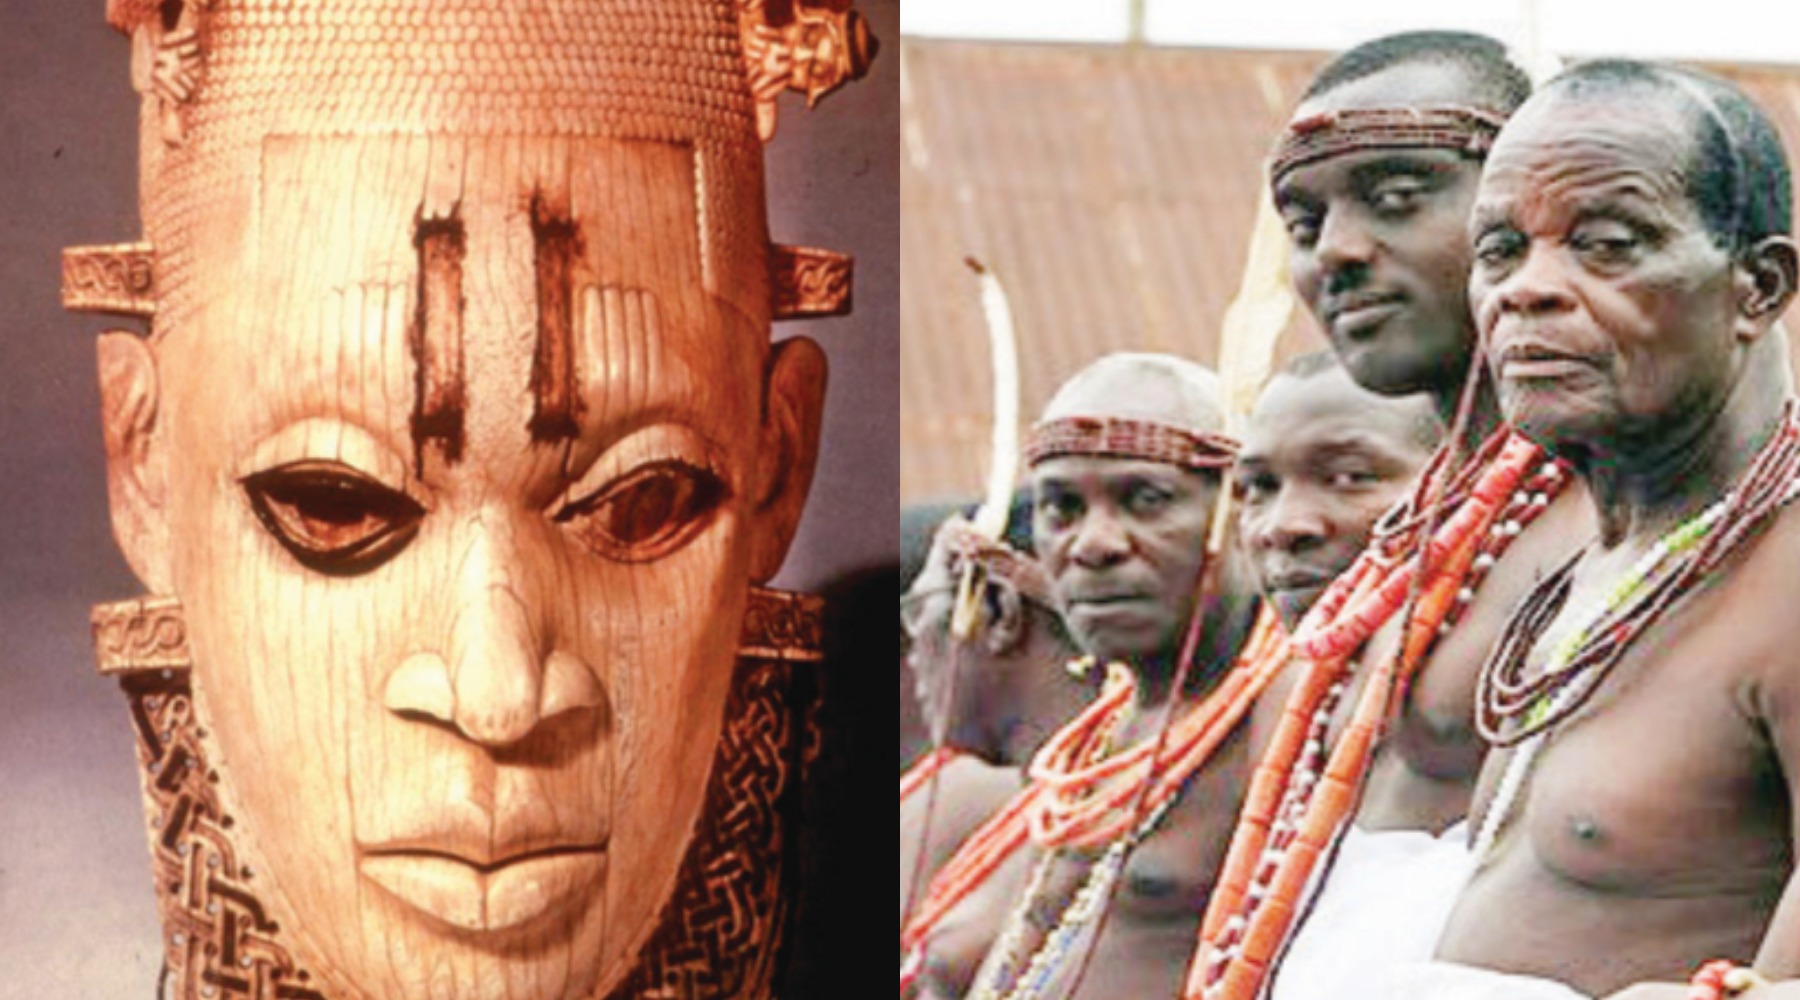 Bini People | Ethnic group of Africa